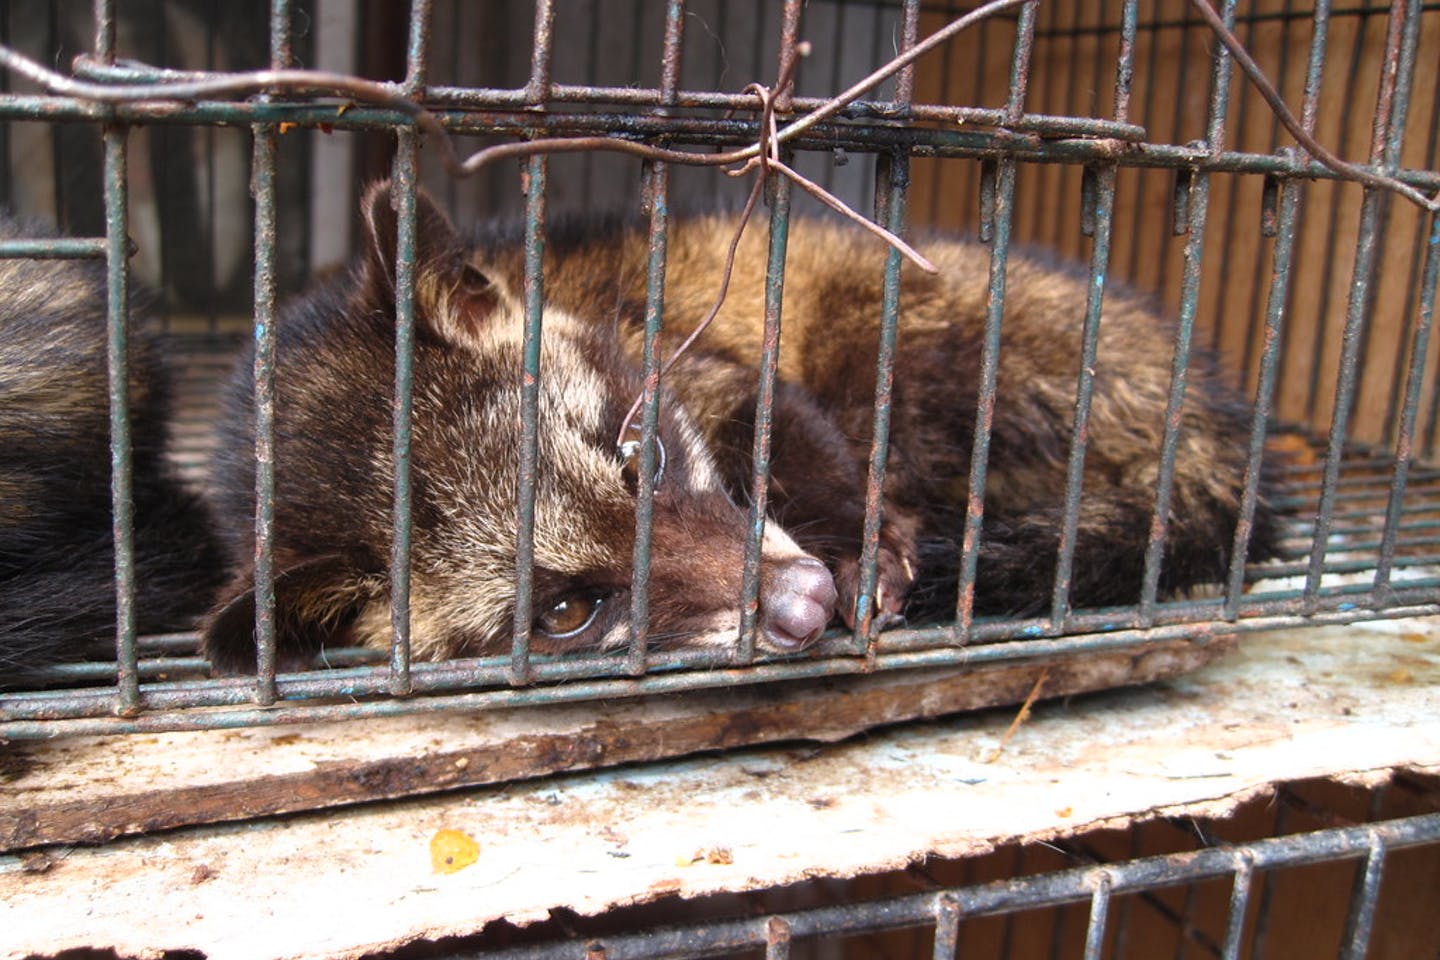 Παράνομο εμπόριο άγριων ζώων: Έβγαζαν εκατομμύρια και τα περνούσαν παράνομα στην Ελλάδα